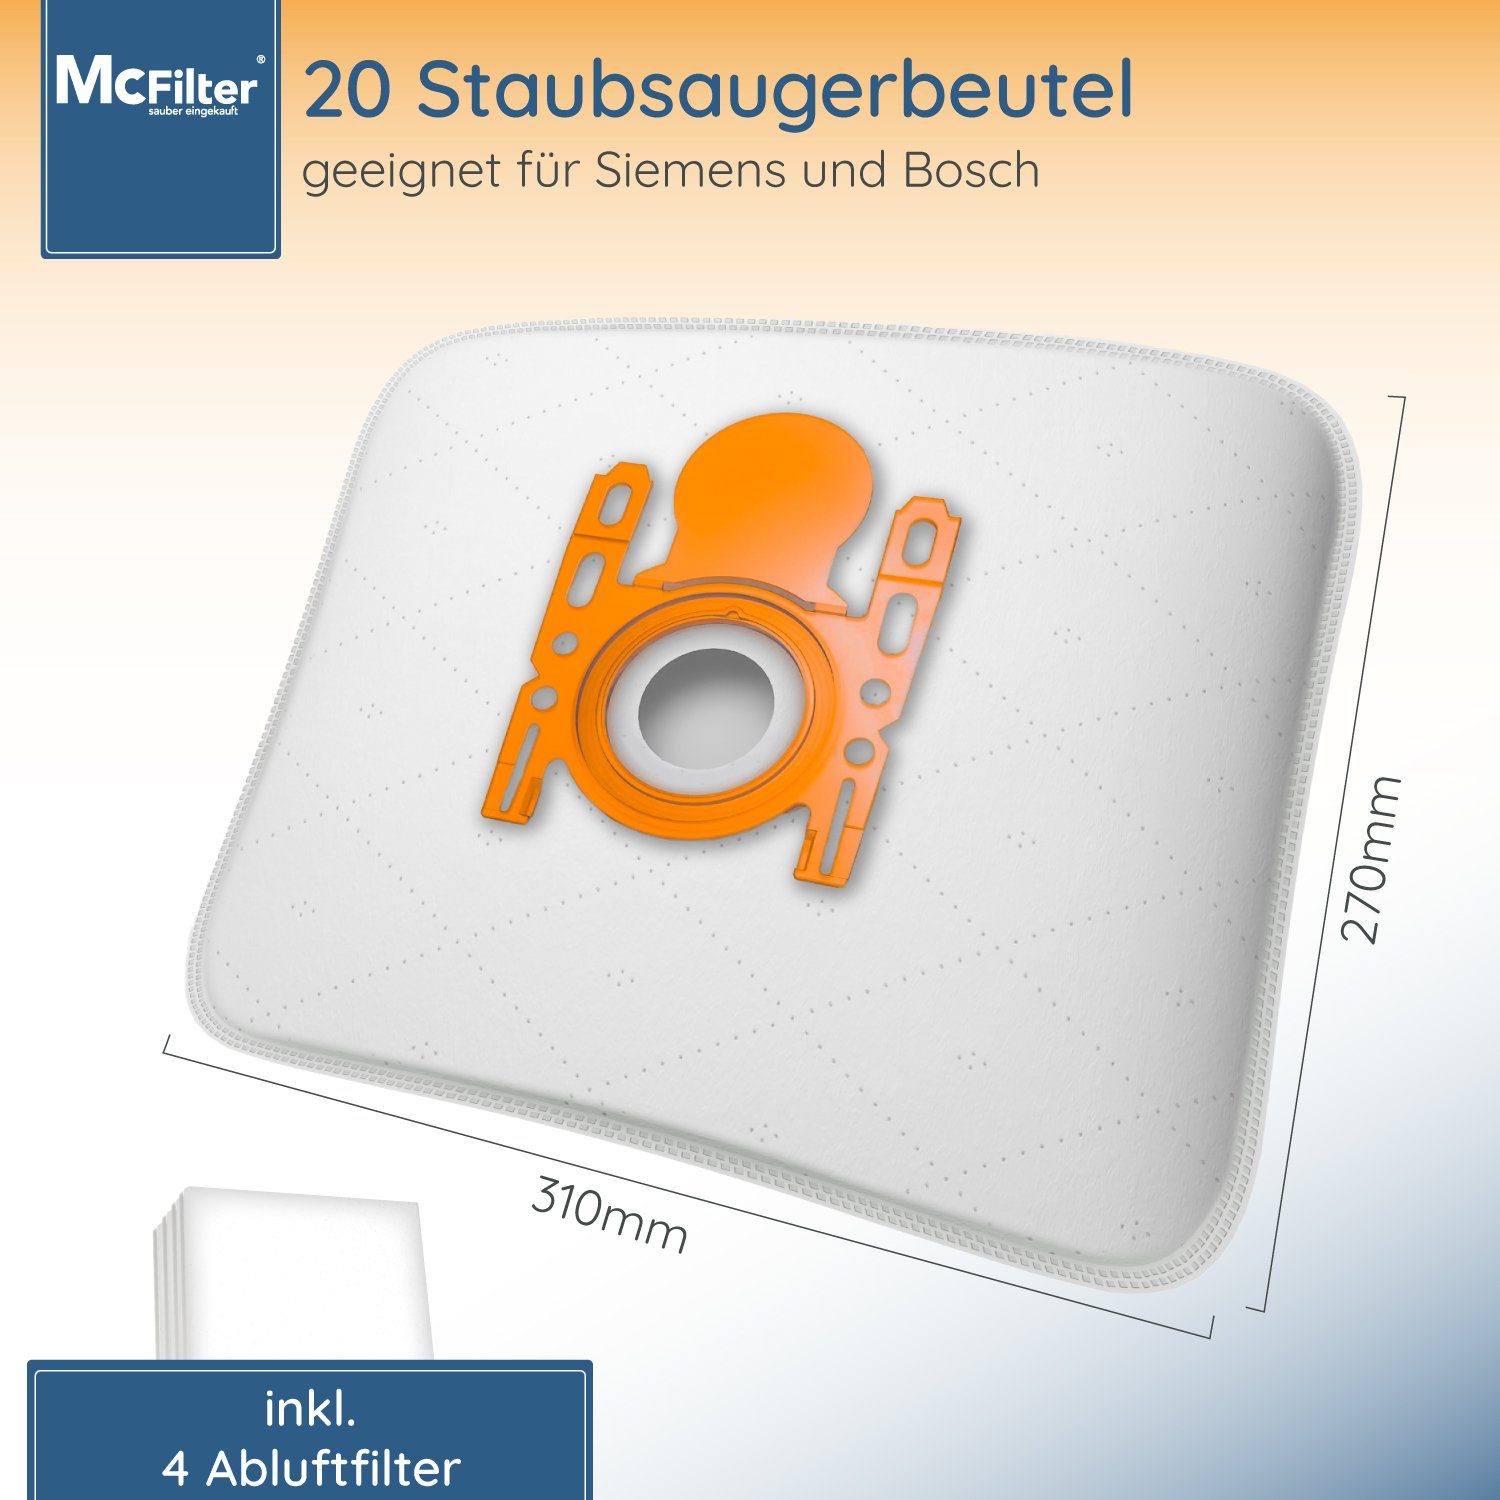 McFilter Staubsaugerbeutel Siemens (20 Stück), passend für VSQ5X1230 Q5.0  extreme Silence Power Staubsauger (Serie Q 5.0), 20 St., 5-lagiger Beutel  mit Hygieneverschluss, inkl. Filter